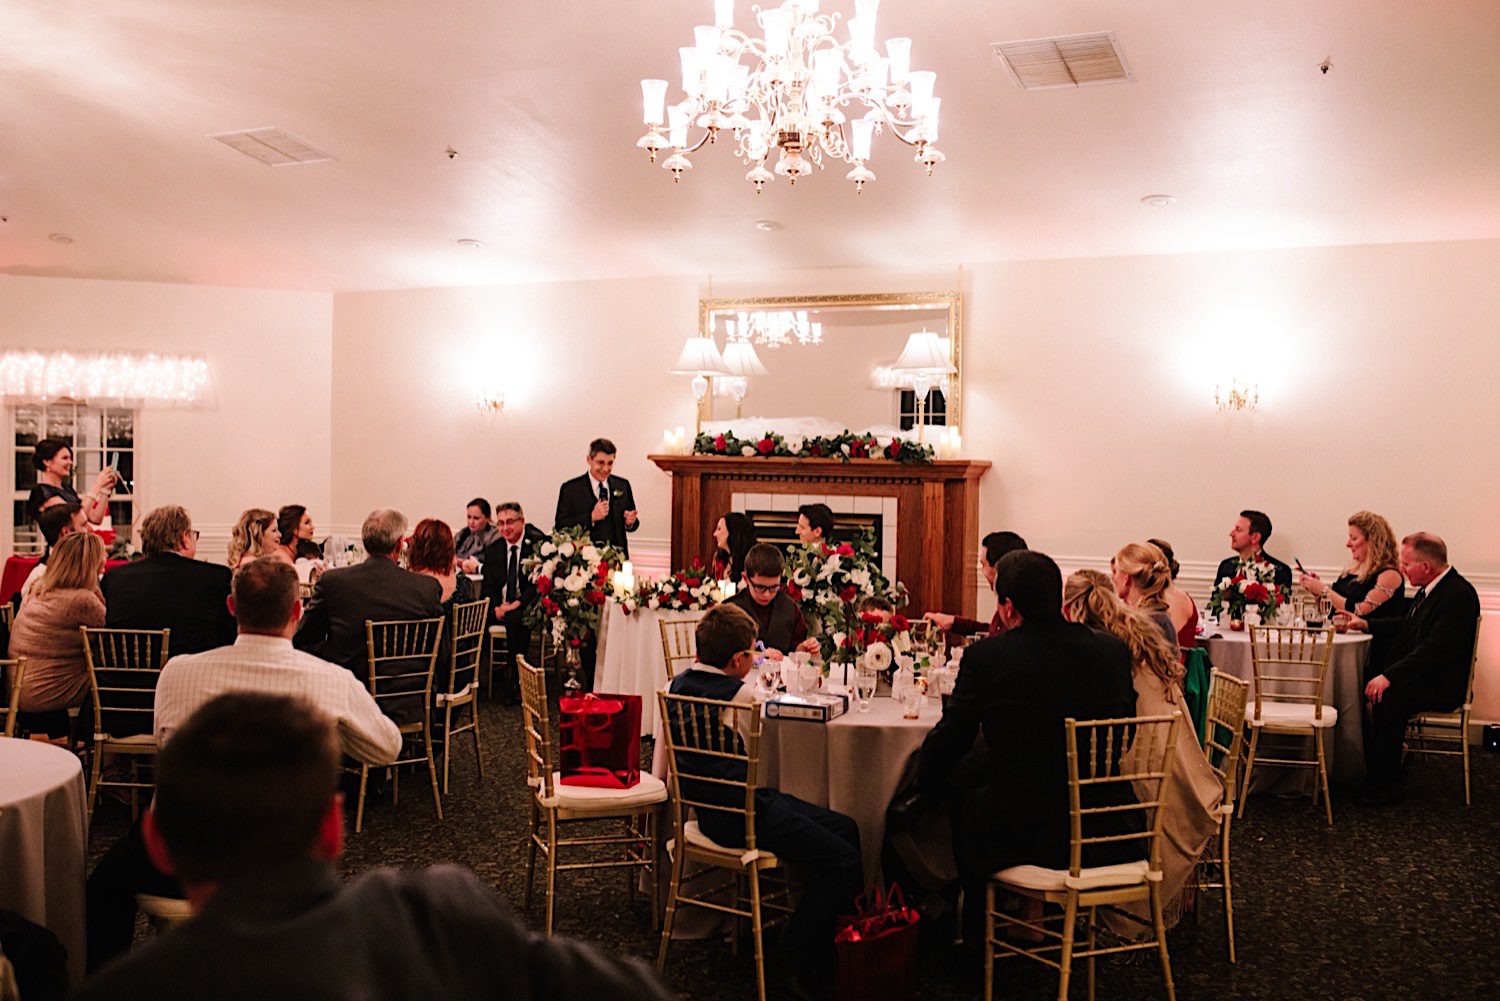 Wedding Reception decor, Fall Colorado Mountain Wedding at Willow Ridge Manor, Wedding Reception, Wedding Photography